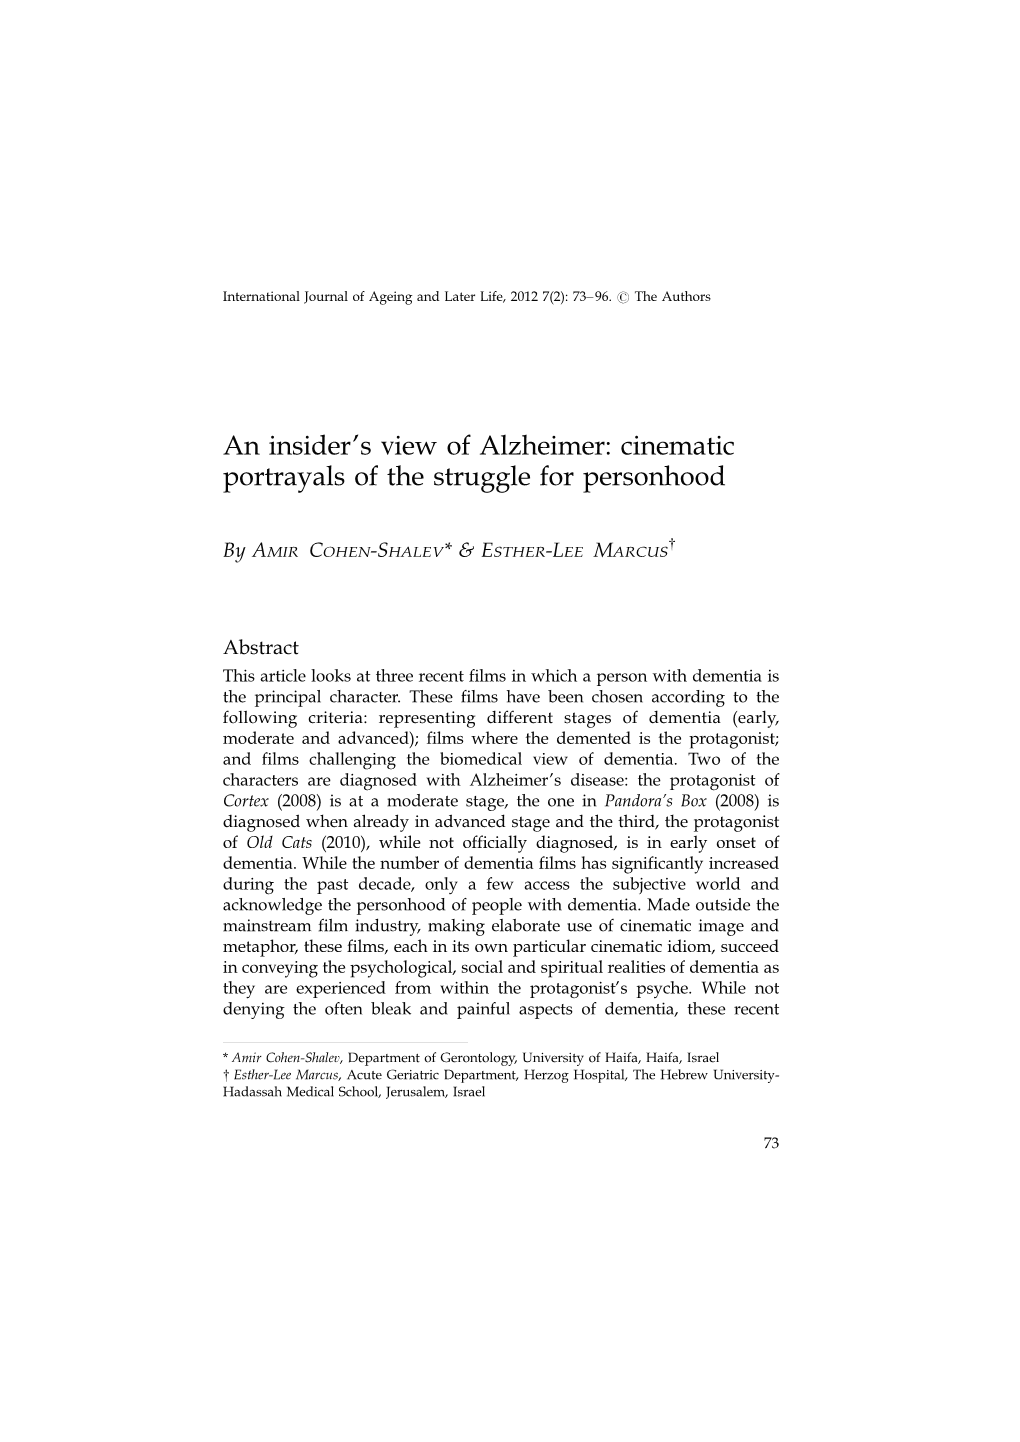 An Insider's View of Alzheimer